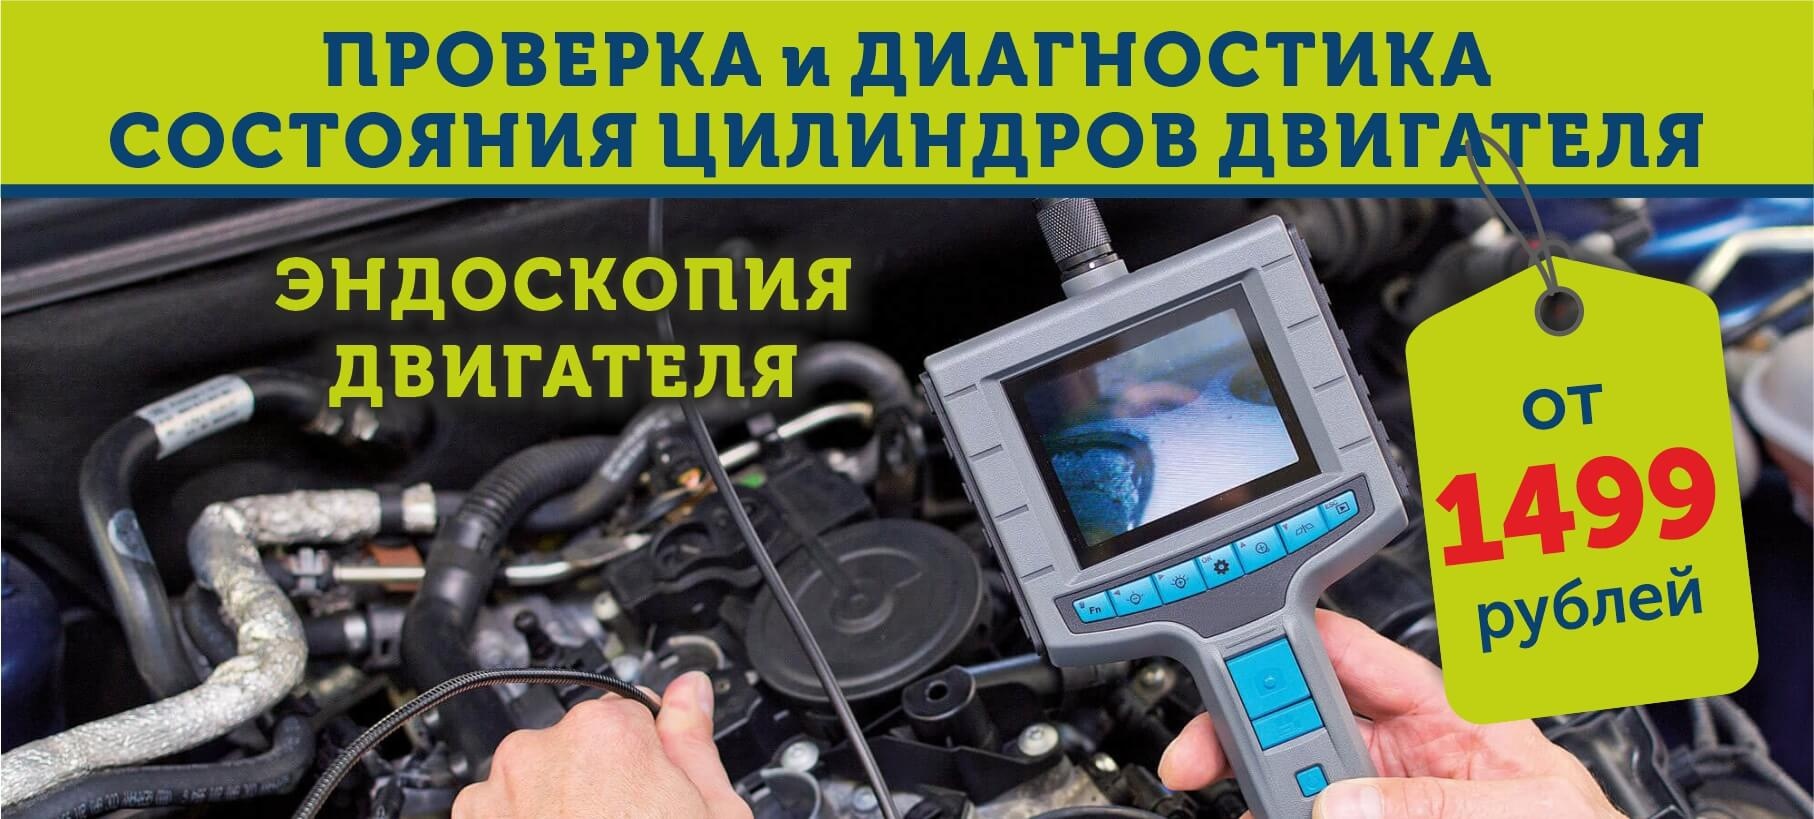 Проверка и диагностика состояния цилиндров двигателя от 1499 рублей!